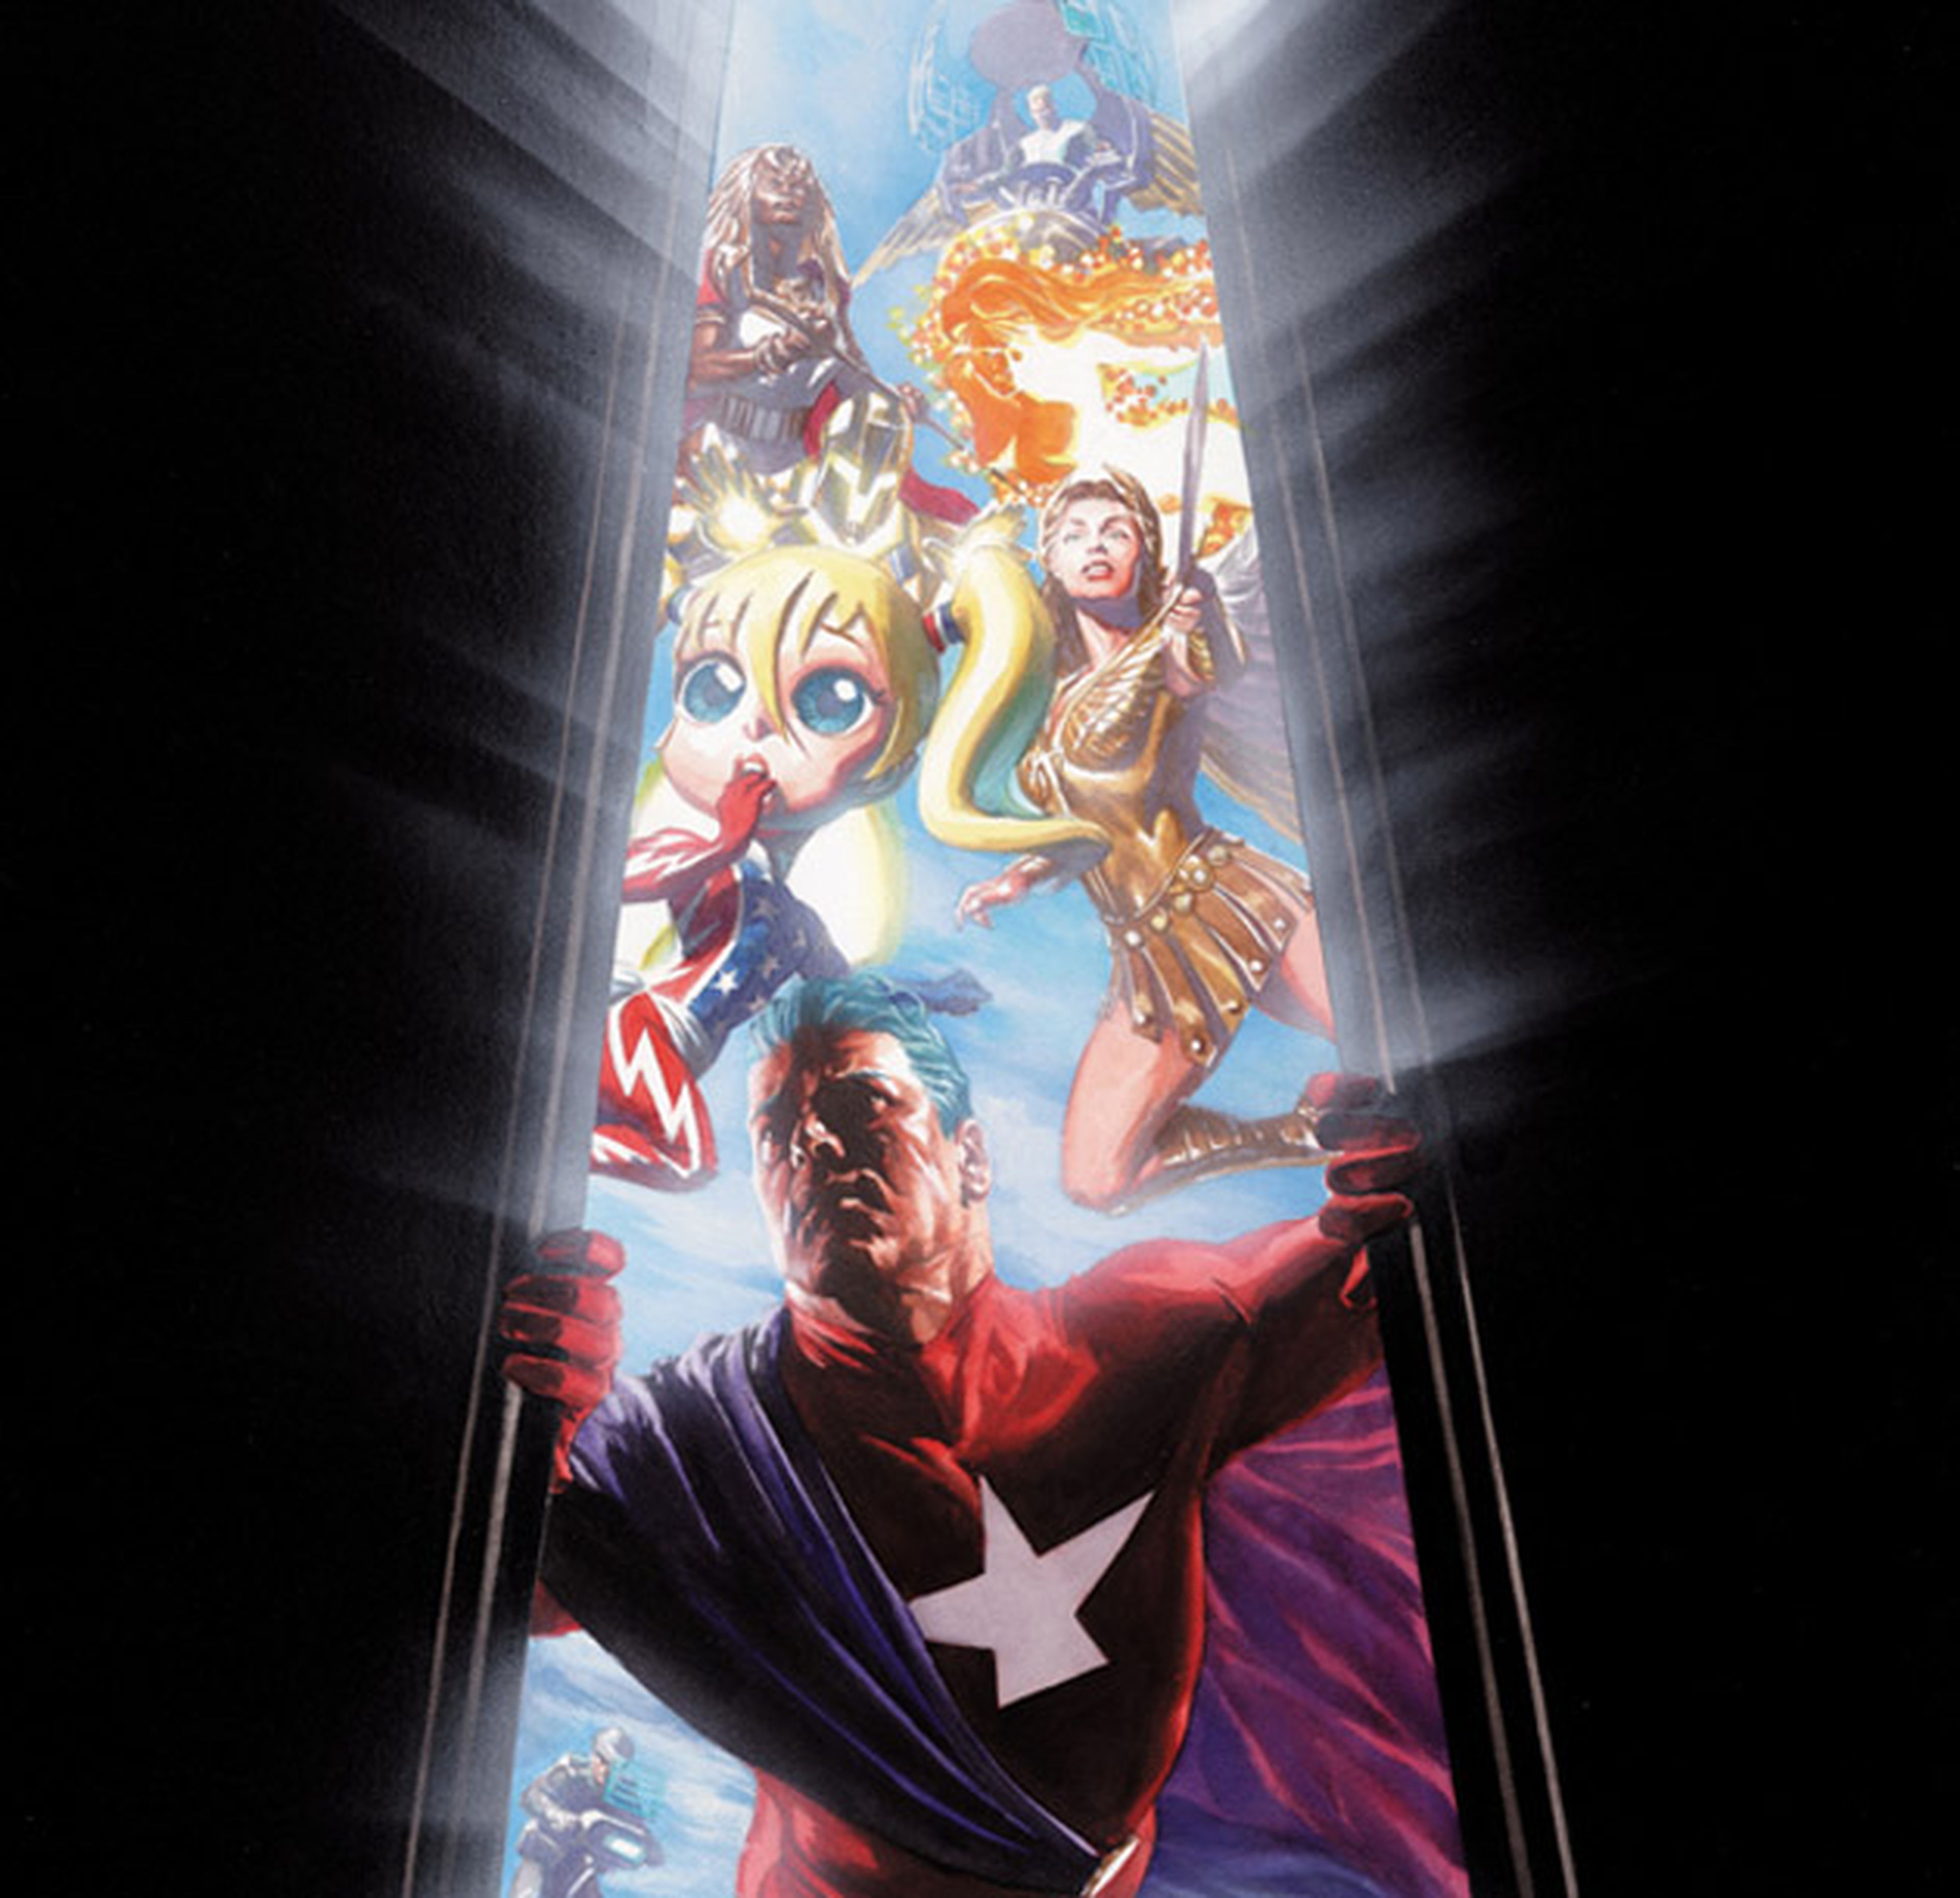 DC publicará la nueva Astro City bajo el sello Vertigo